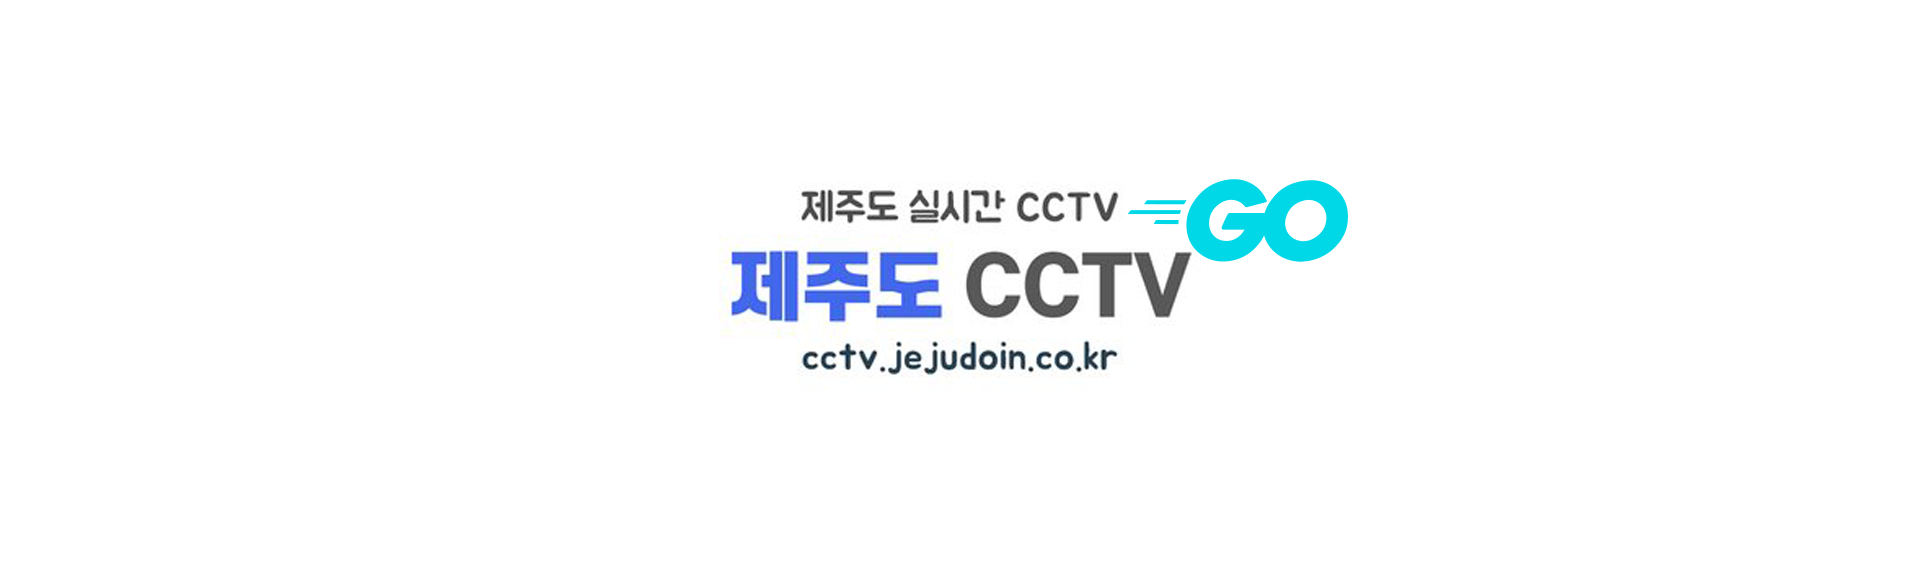 제주도 CCTV 실시간 스트리밍 영상 홈페이지 『제주도CCTV』